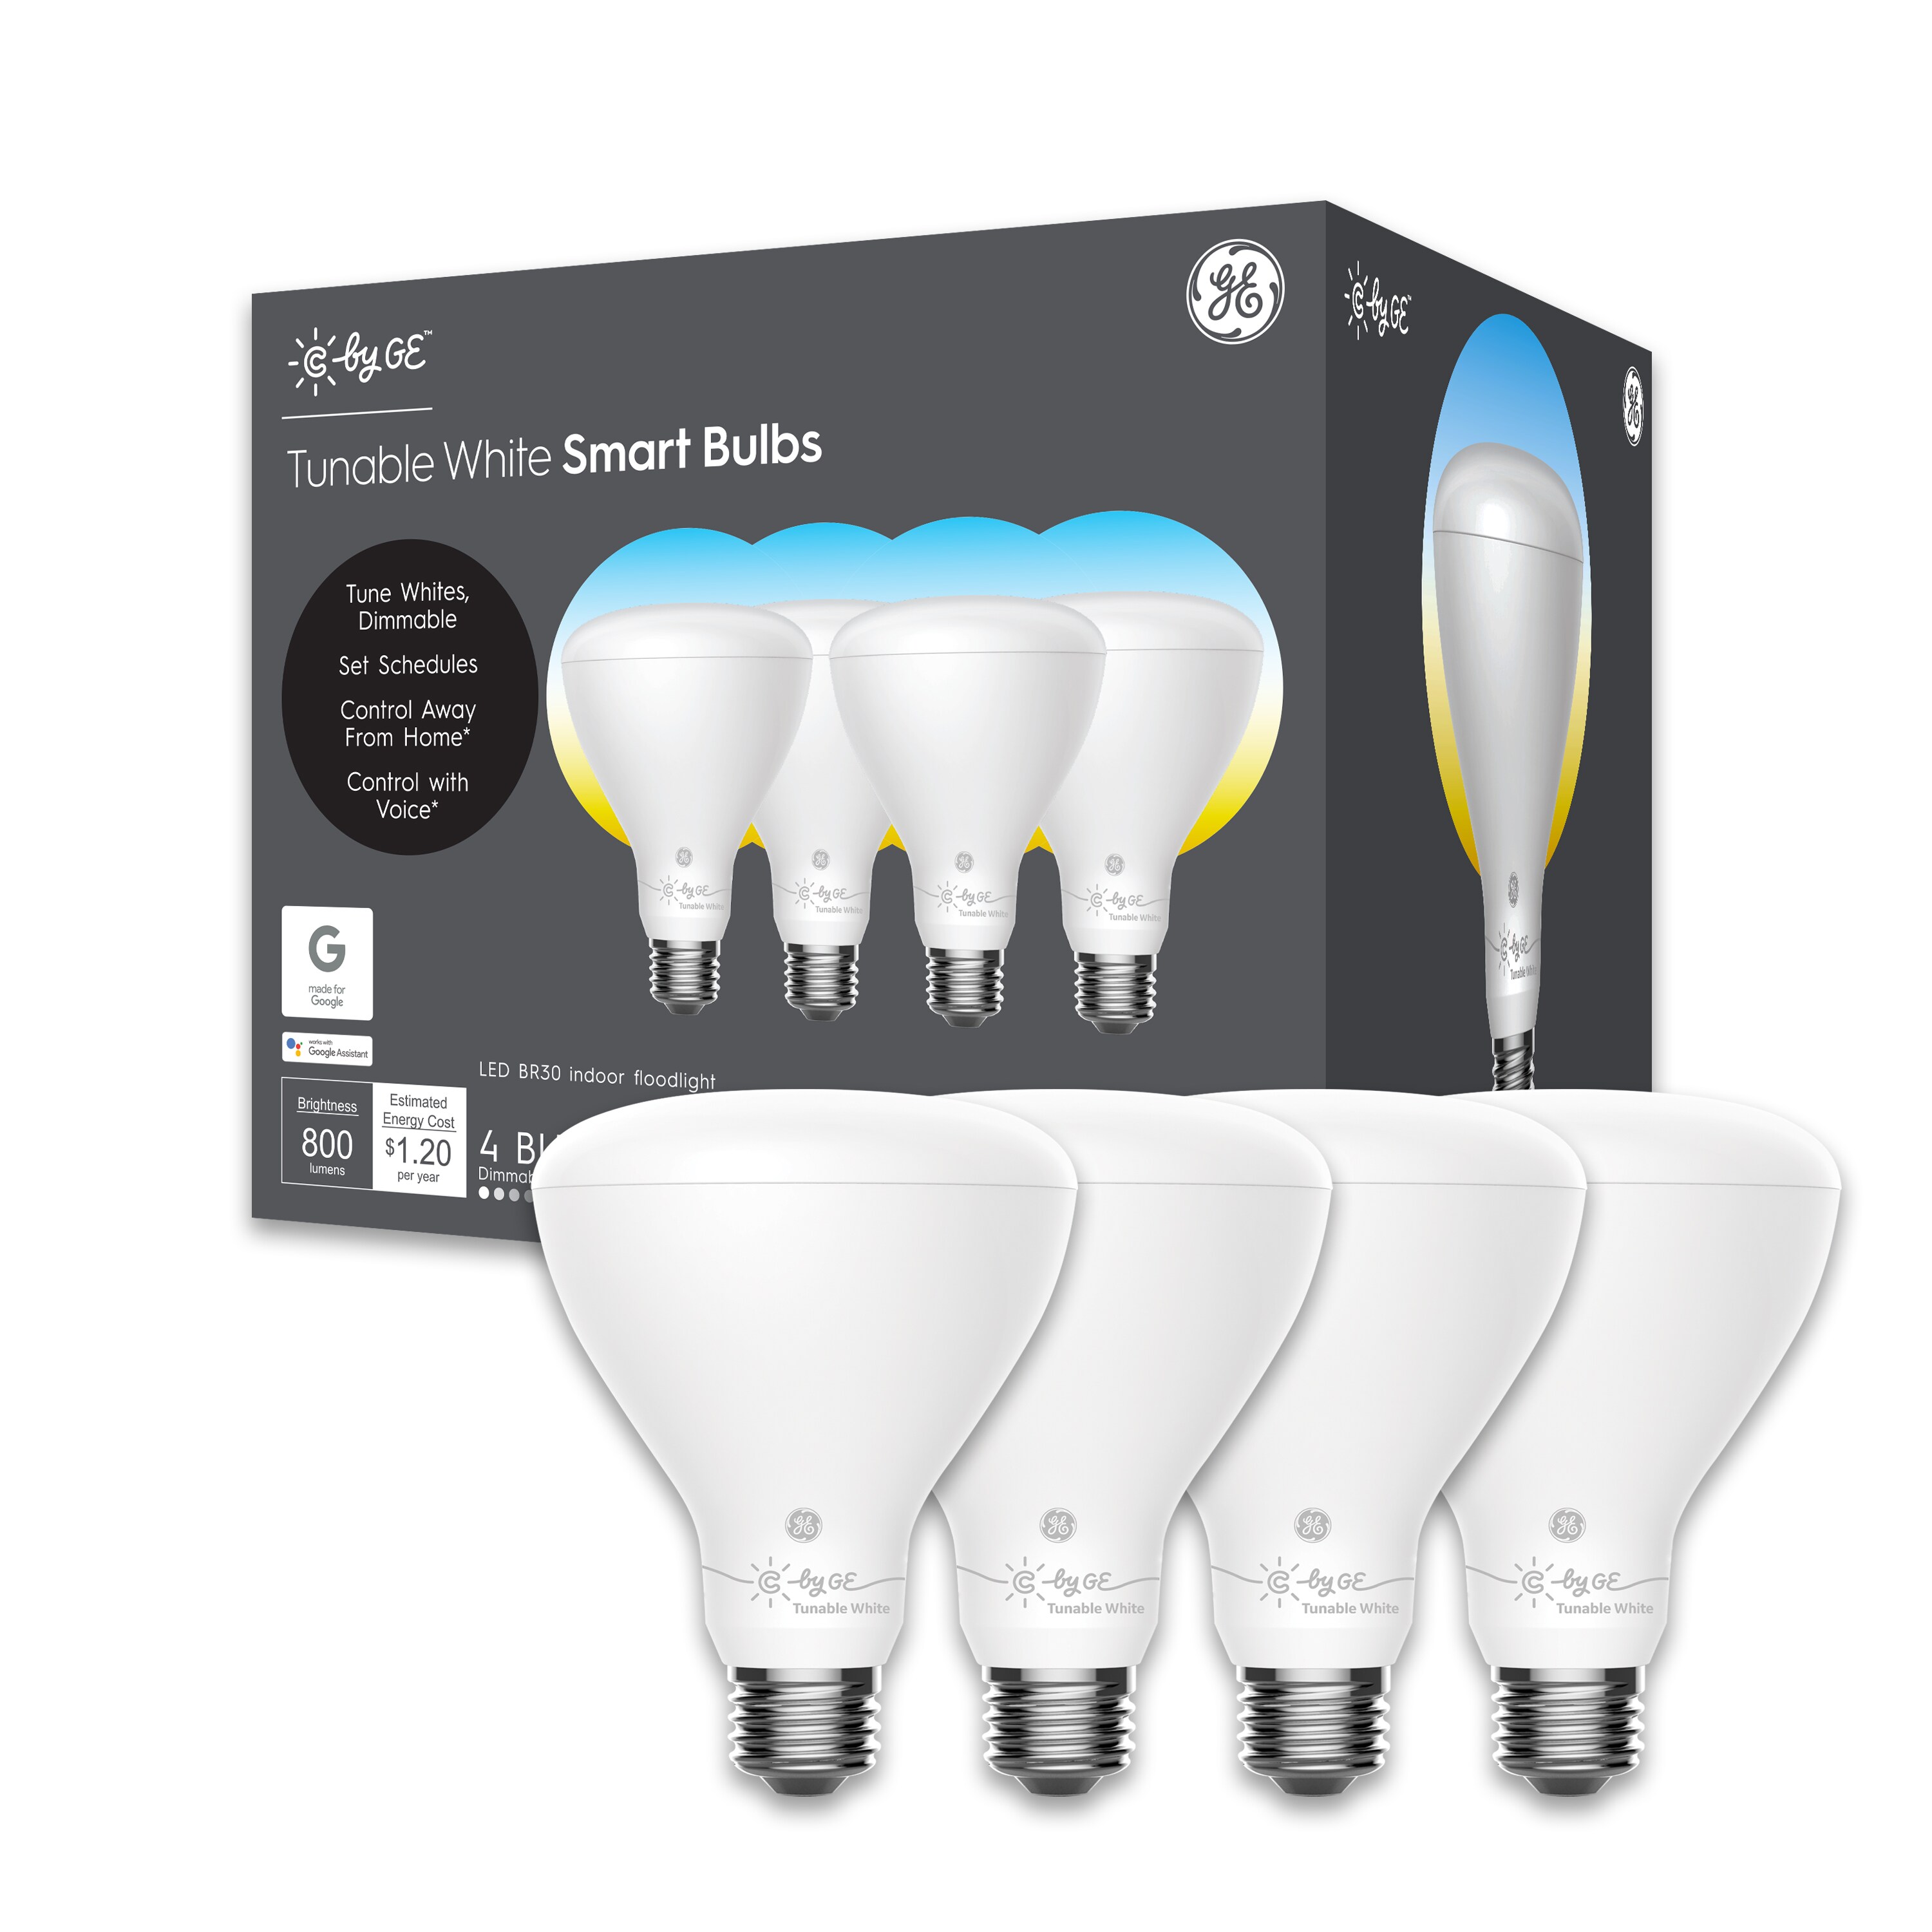 6 New GE Bulb Soft White 60 Watts Pack of 4 bulbs per Pack 